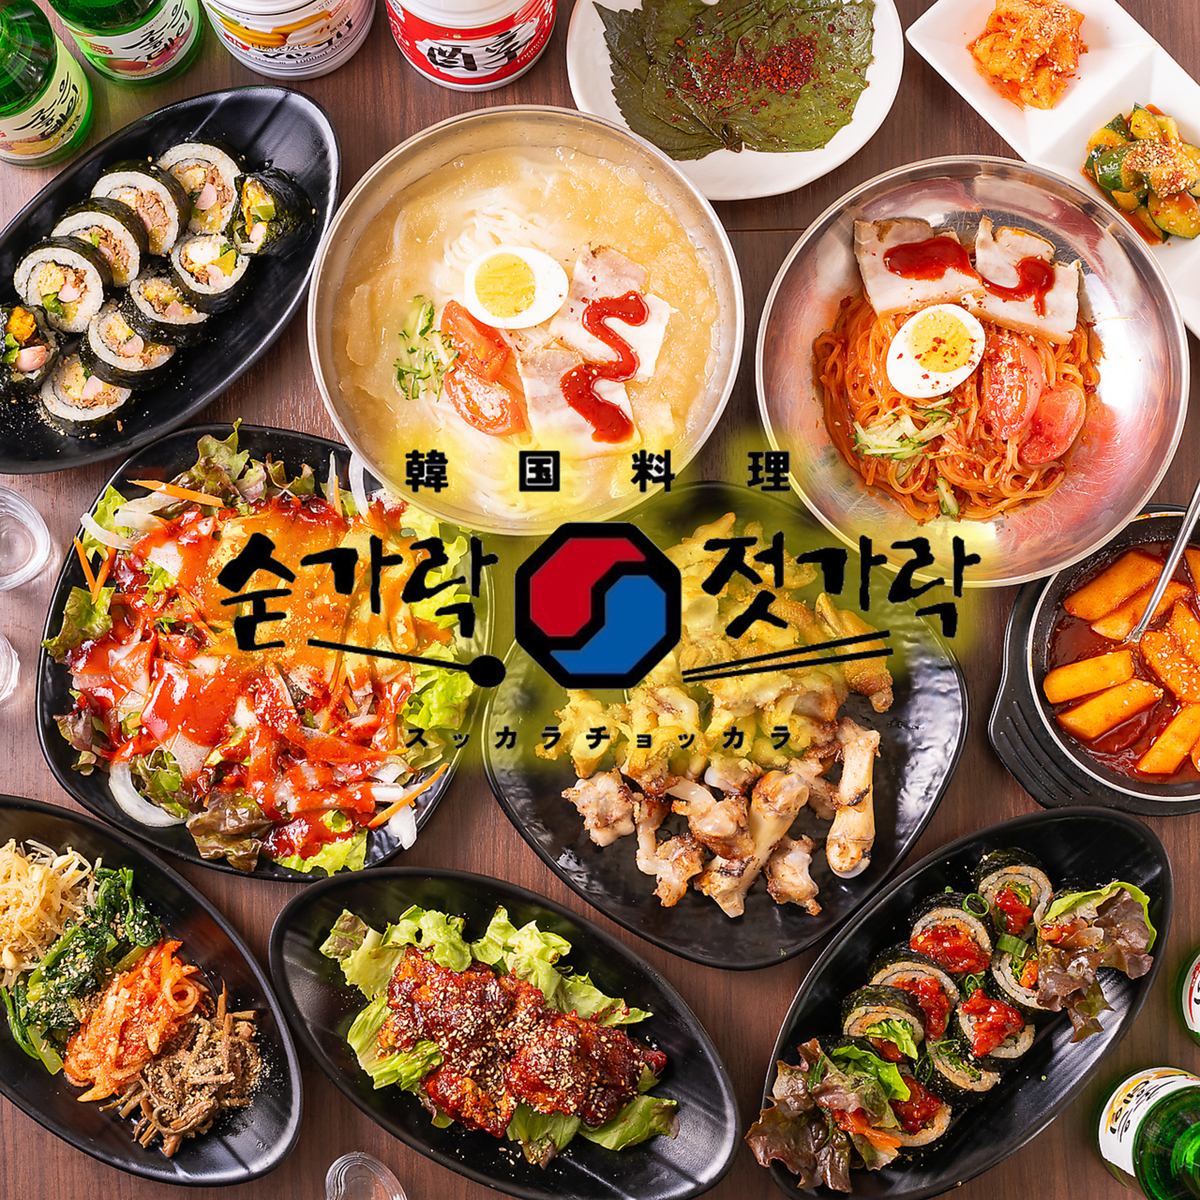 本場の韓国料理と多彩なお酒を楽しめる韓国居酒屋で楽しいひと時をお過ごしください♪